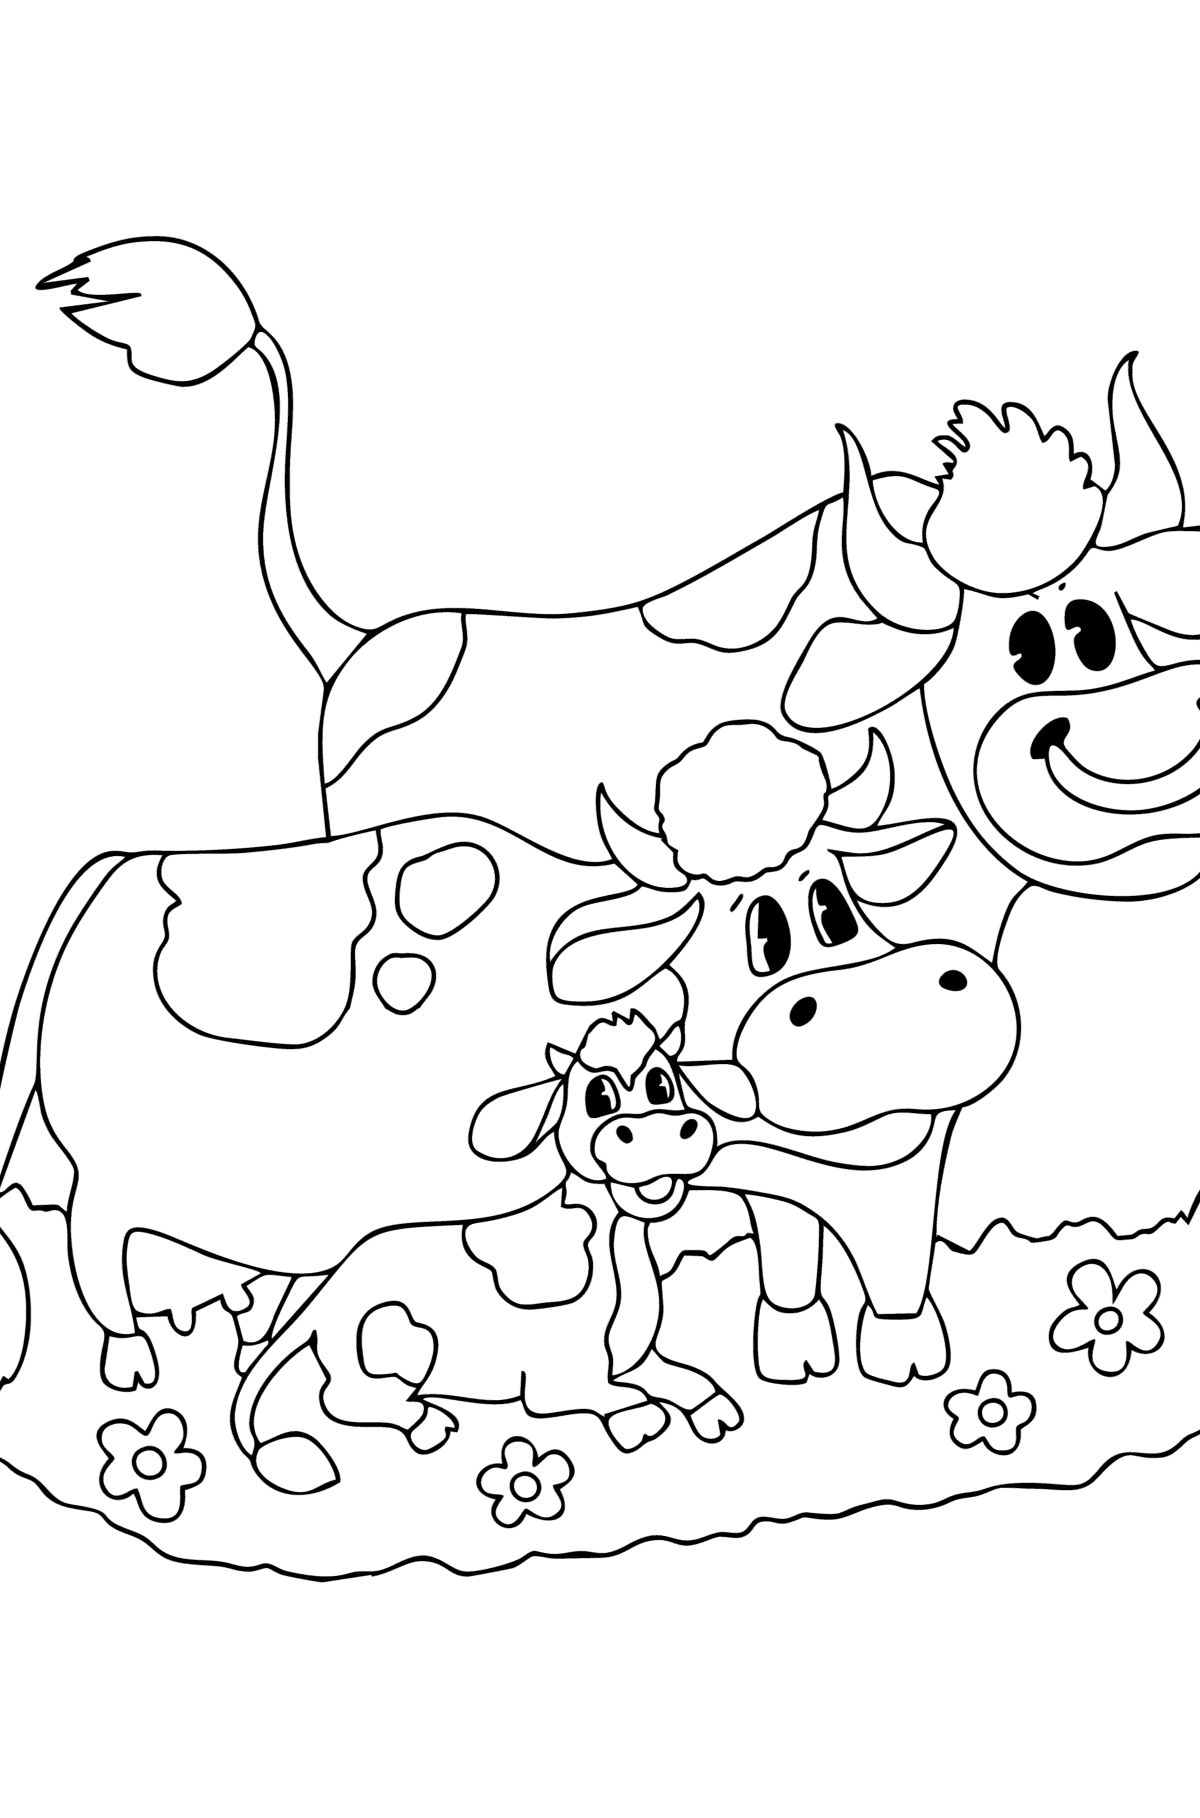 Kleurplaat Koe, stier en kalf - kleurplaten voor kinderen